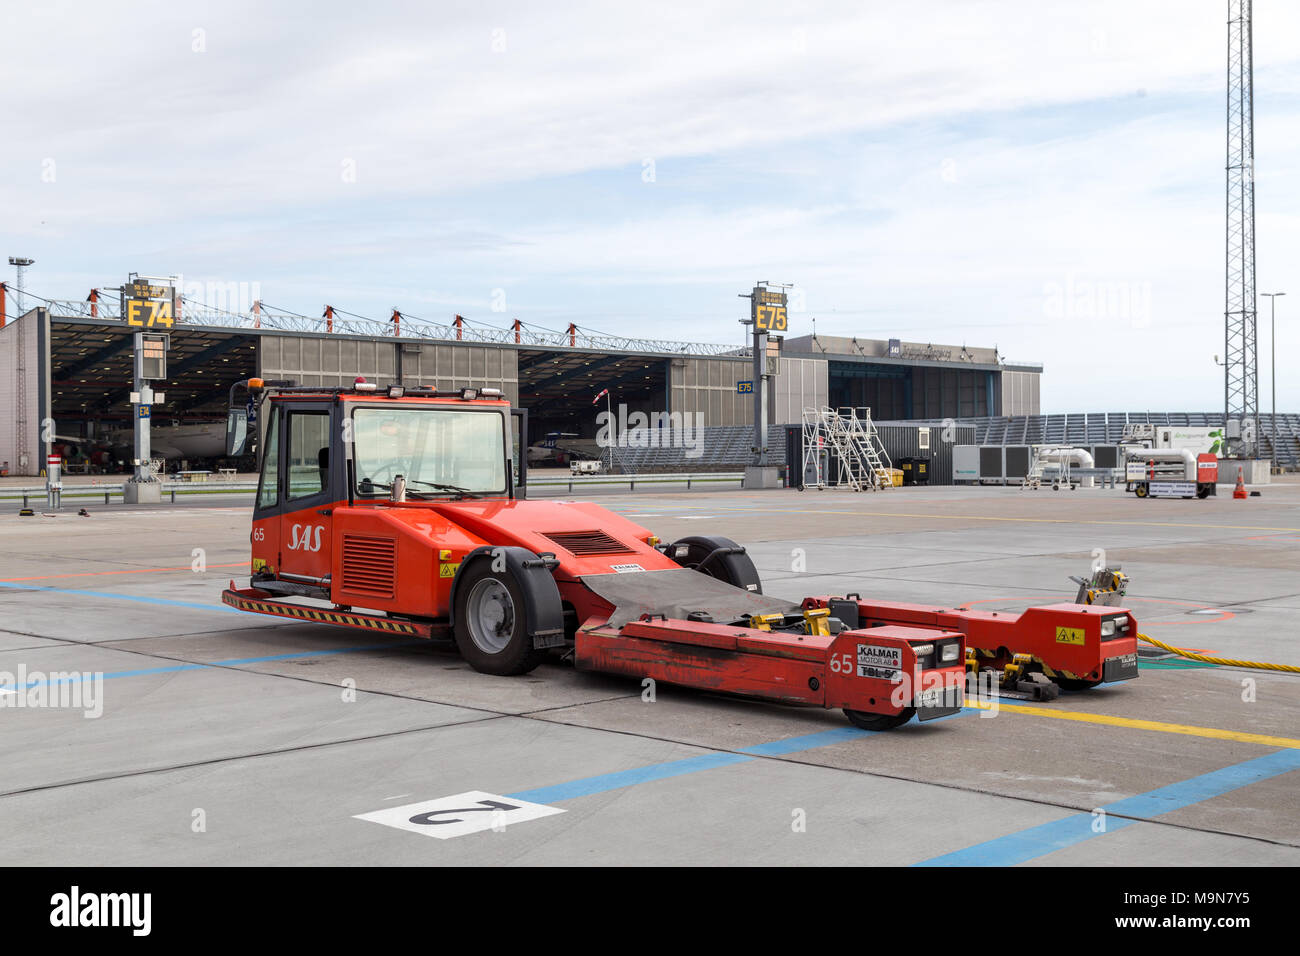 Copenhague, Dinamarca - 22 de julio de 2017: Un pushback camión estacionado en el aeropuerto de Copenhague Foto de stock